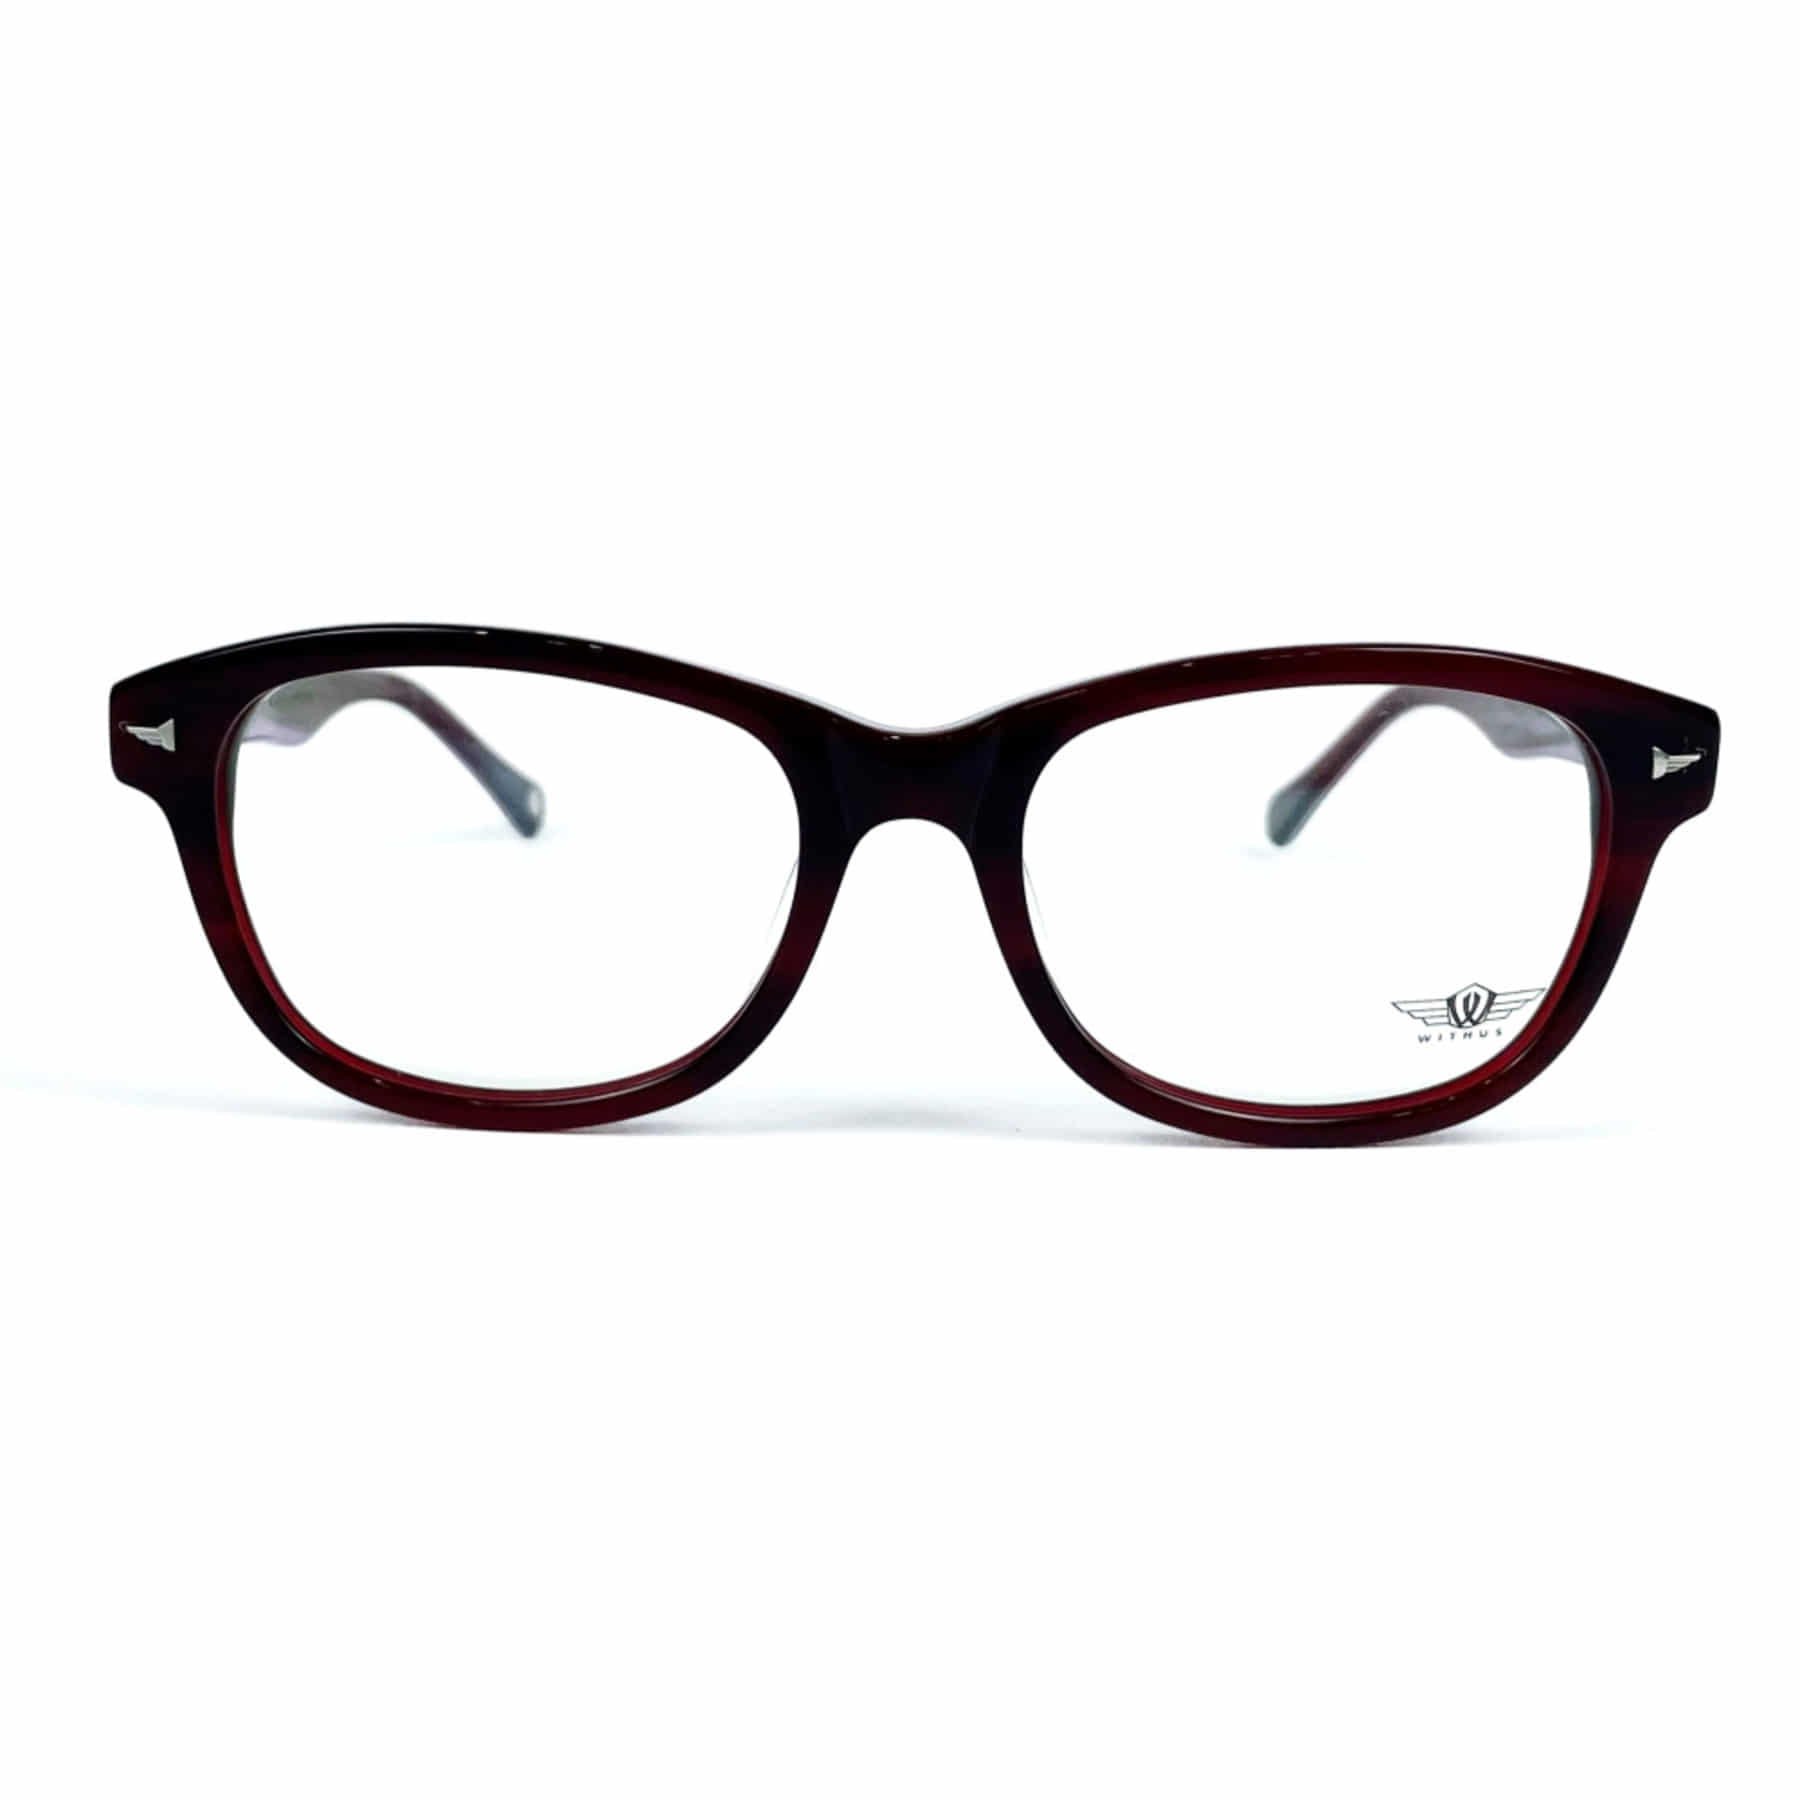 WITHUS-8127, Korean glasses, sunglasses, eyeglasses, glasses